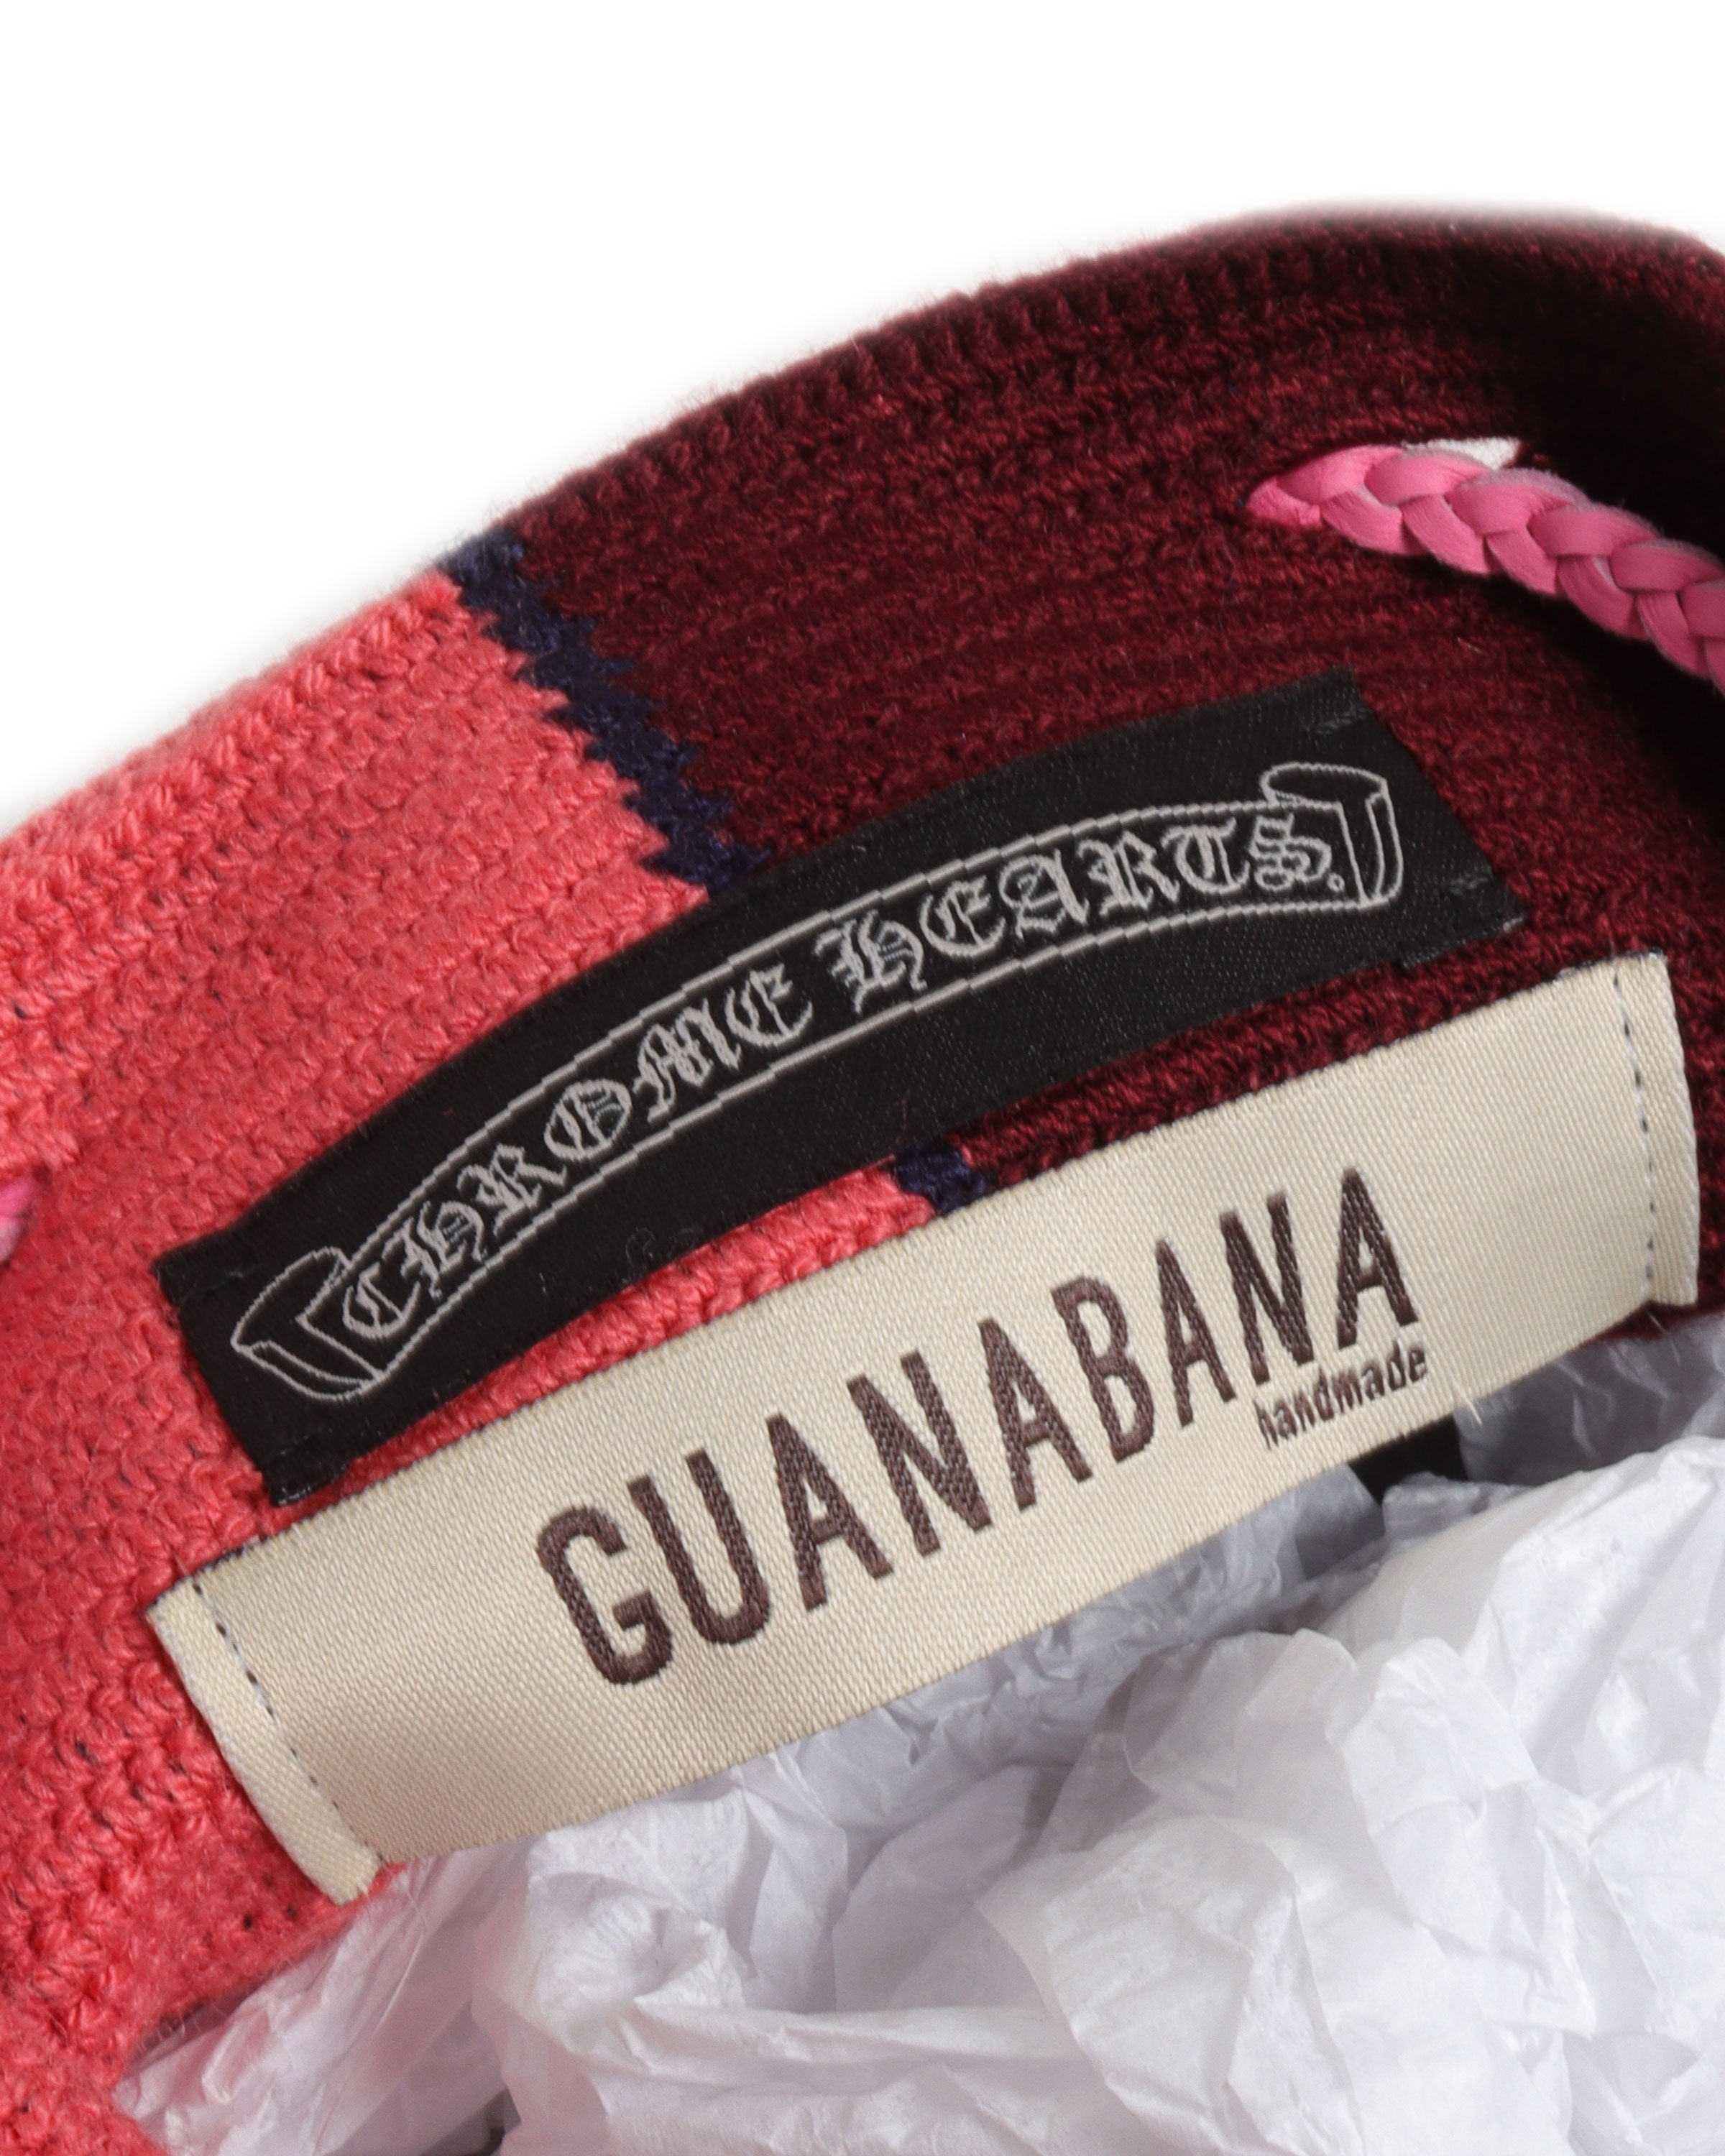 Guanabana Cross Patch Bag